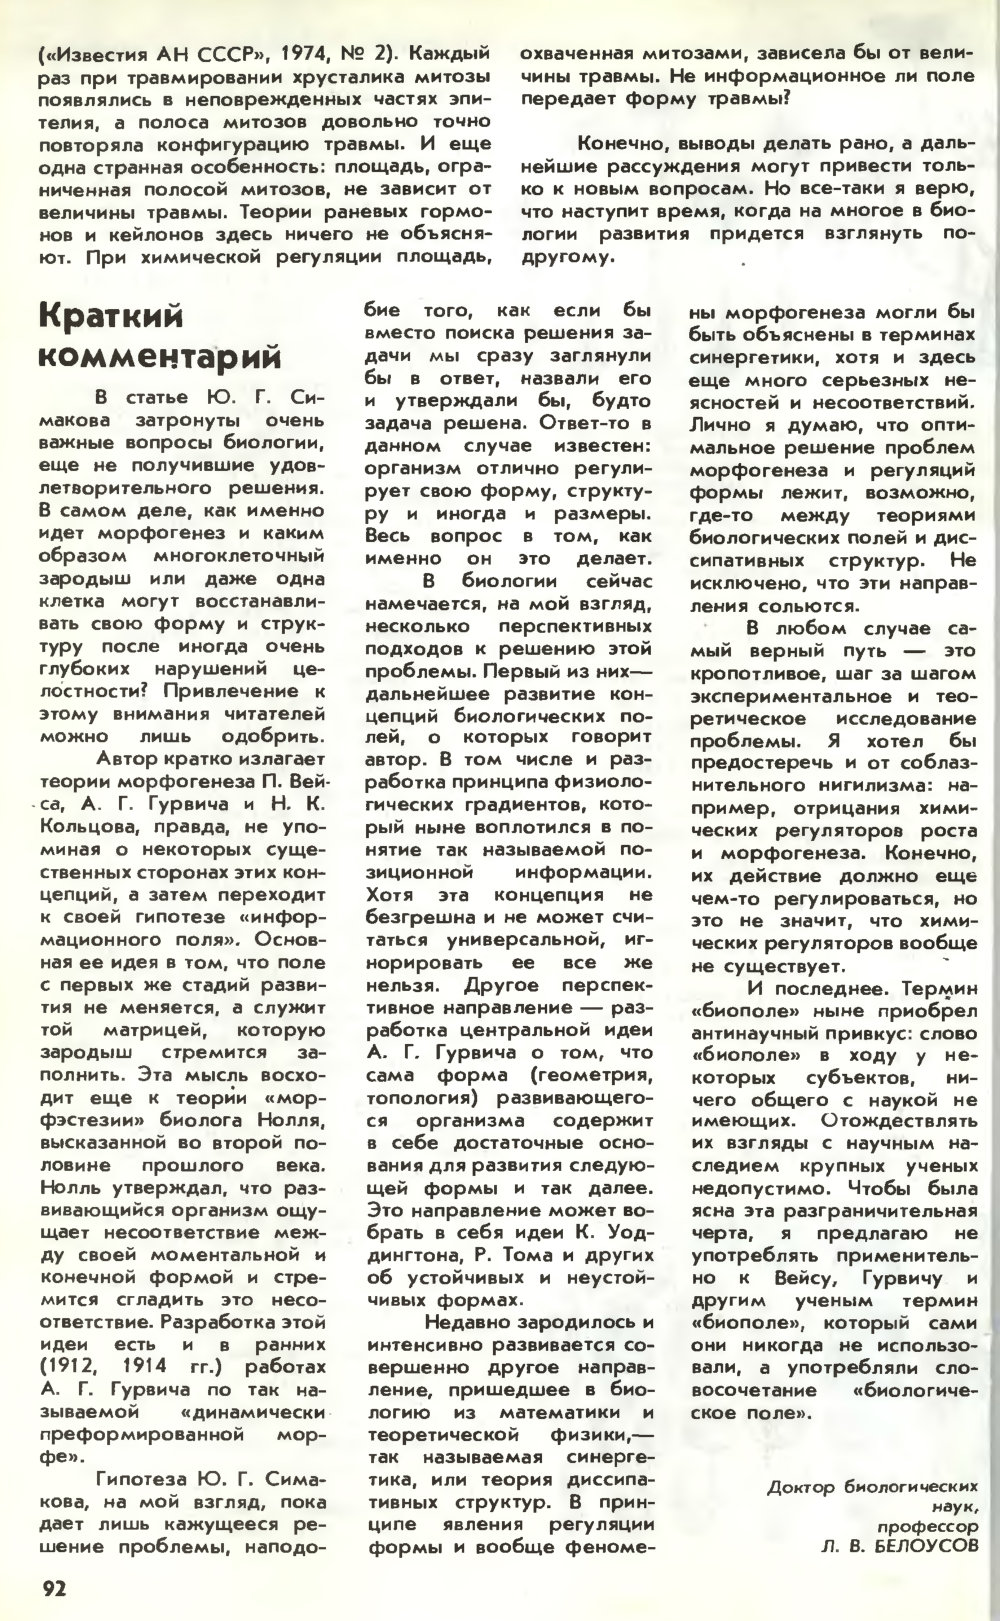 Информационное поле жизни. Ю. Симаков. Химия и жизнь, 1983, №3, с.88-92. Фотокопия №5